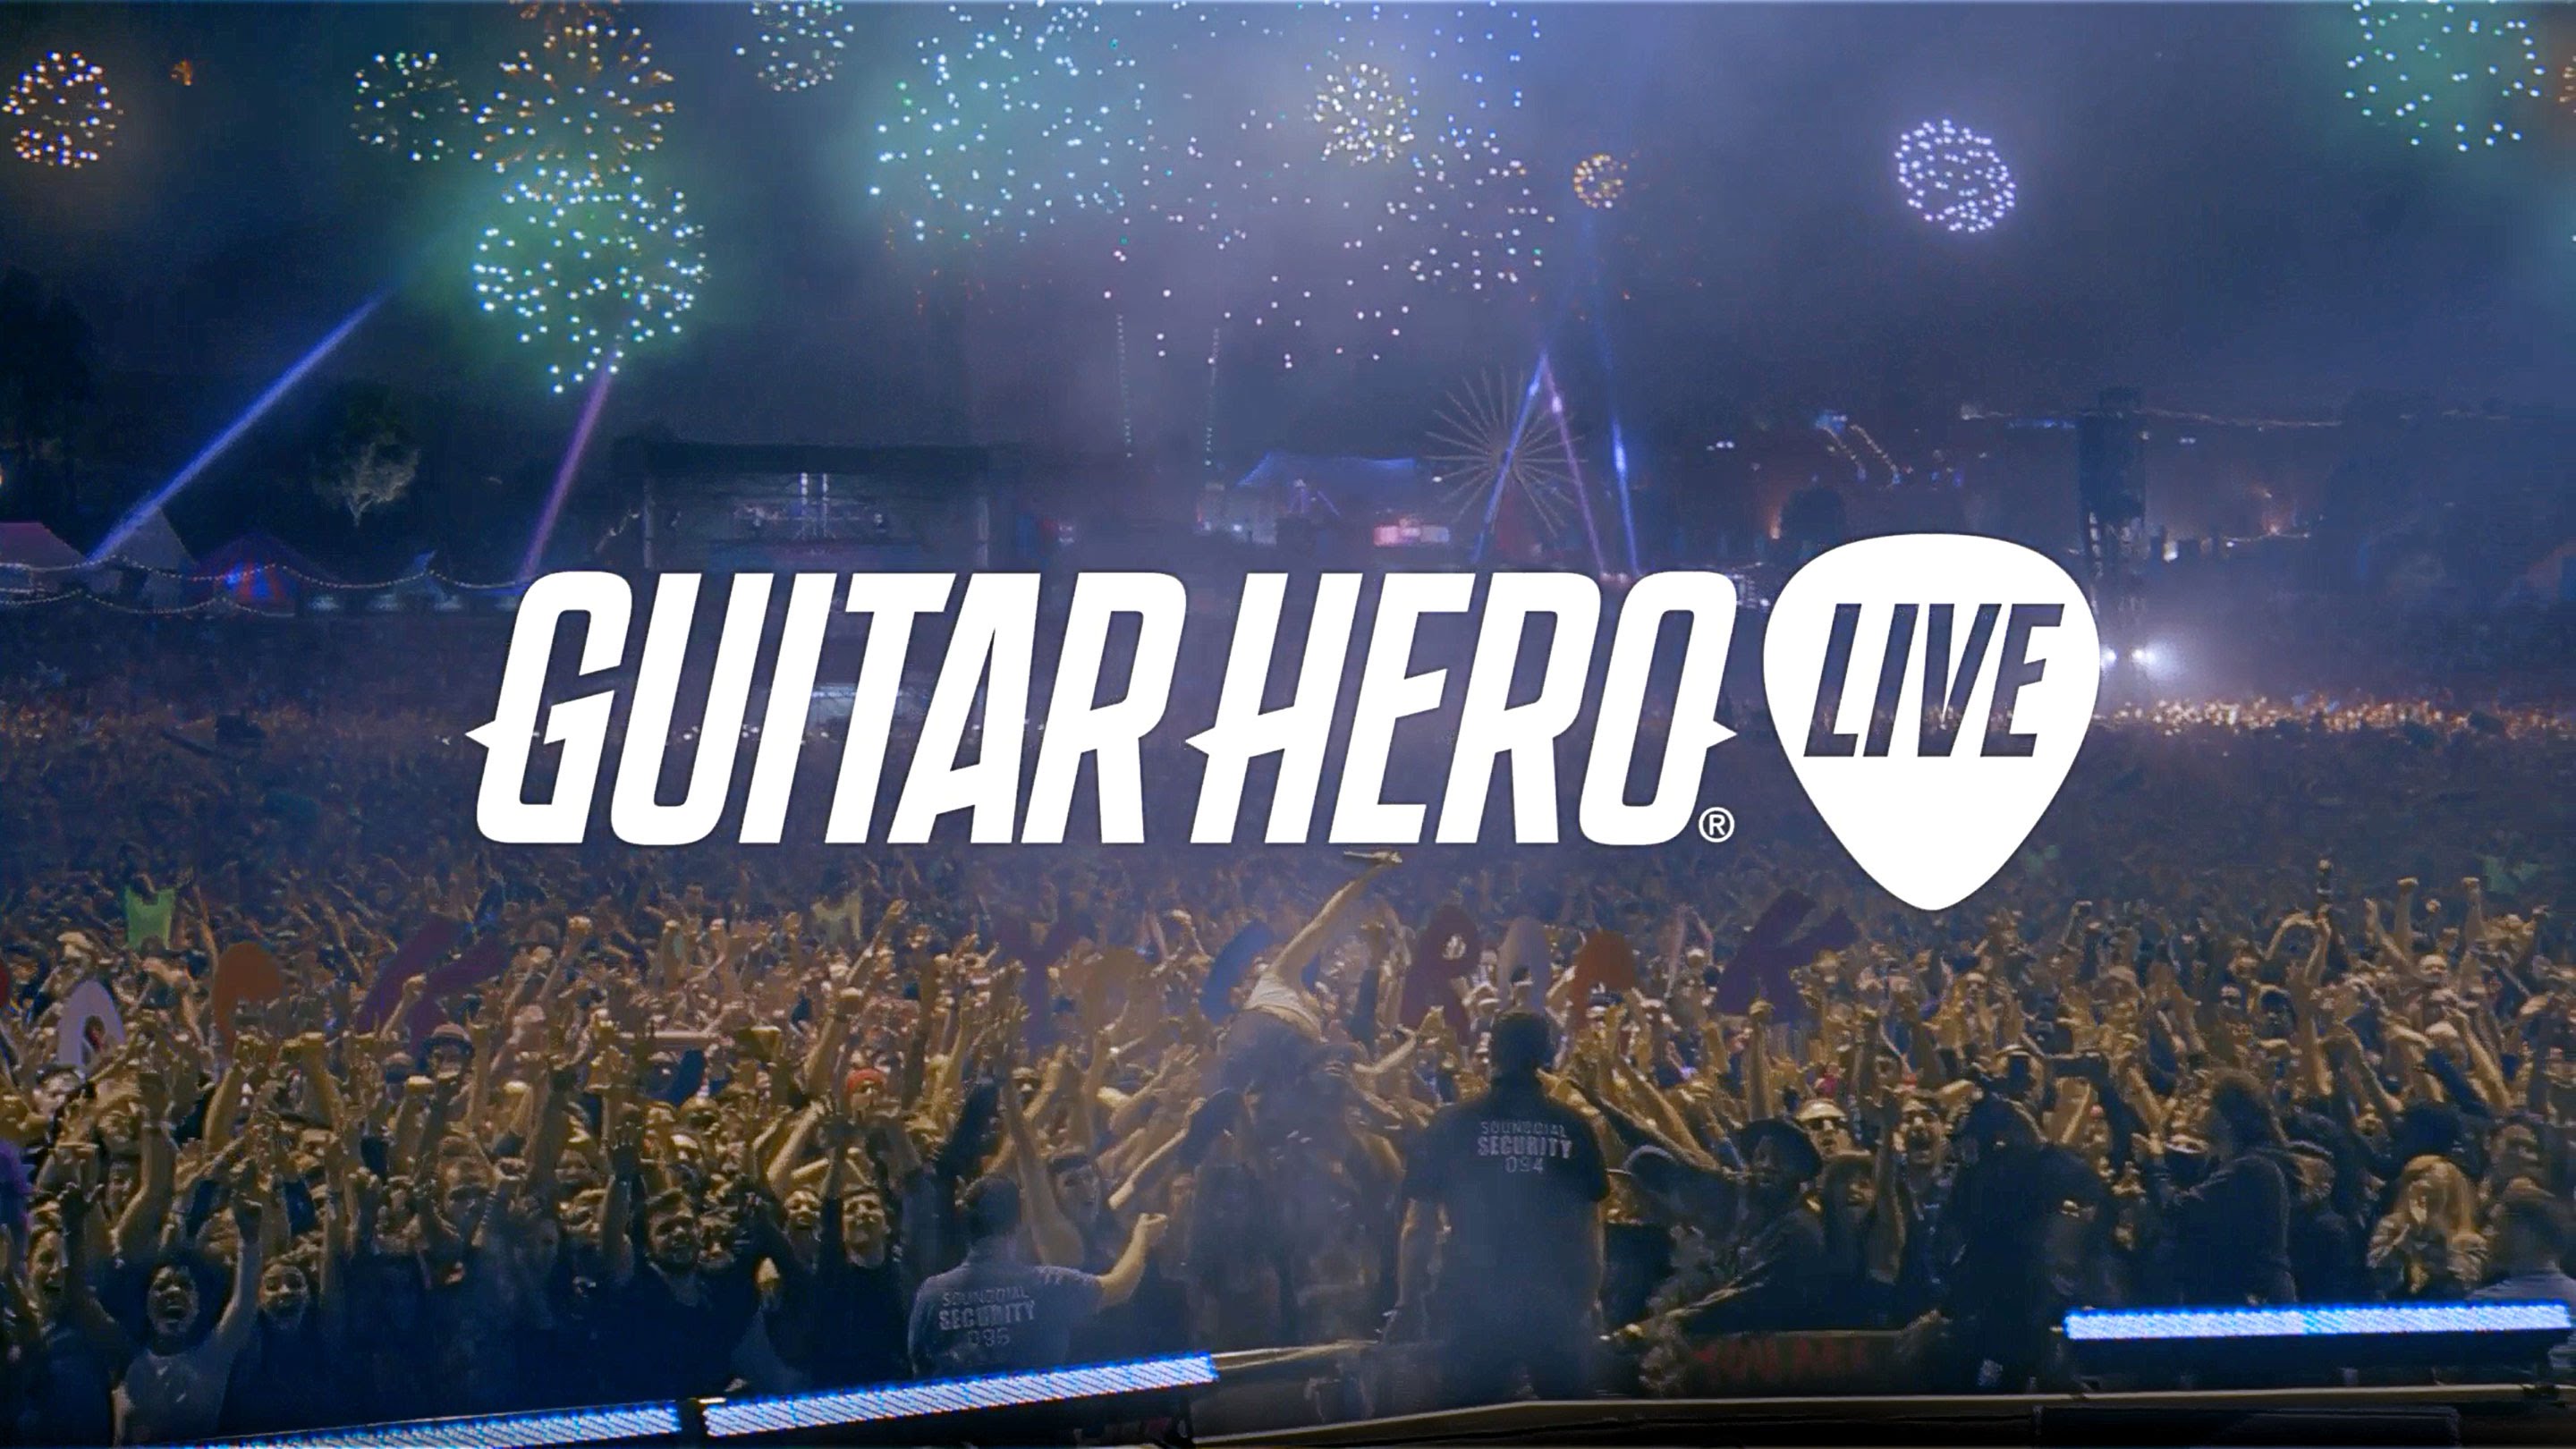 guitar hero live best buy